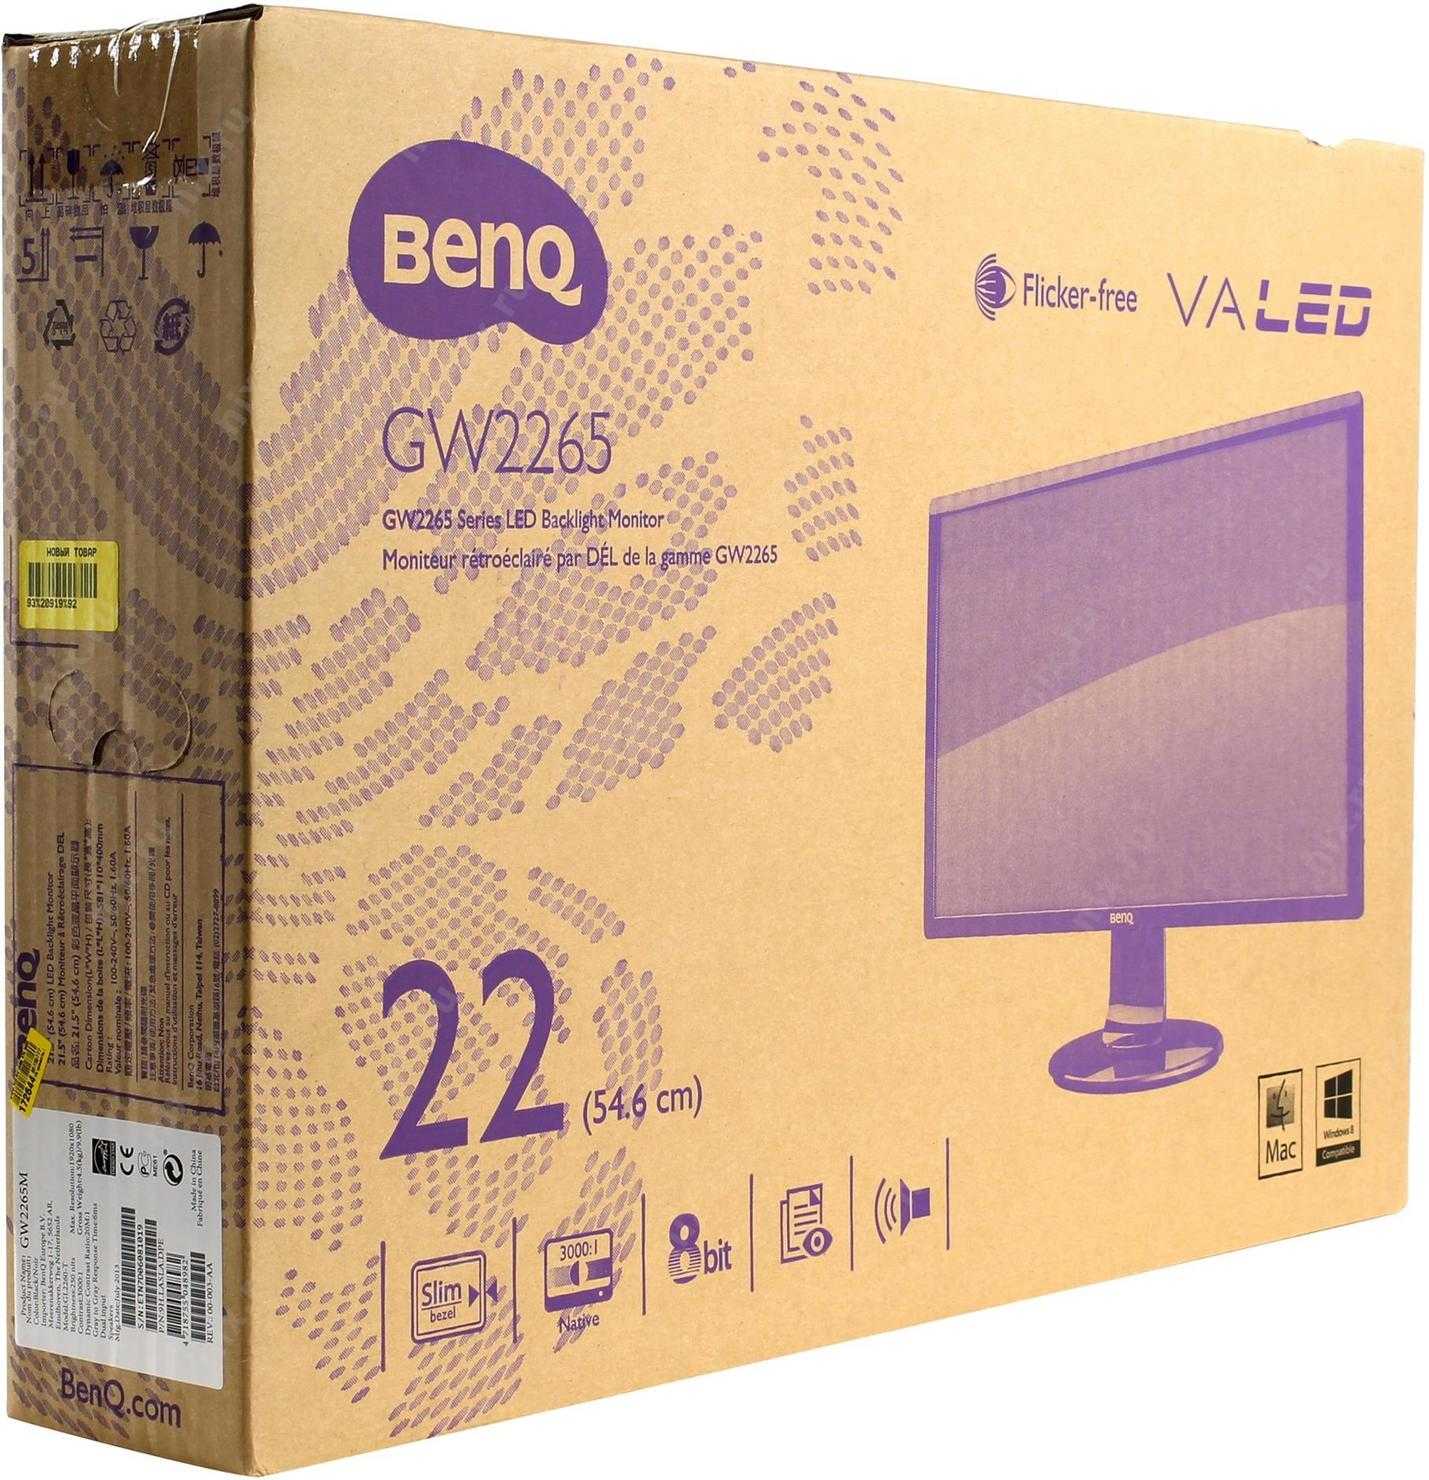 Benq gw2265 купить по акционной цене , отзывы и обзоры.